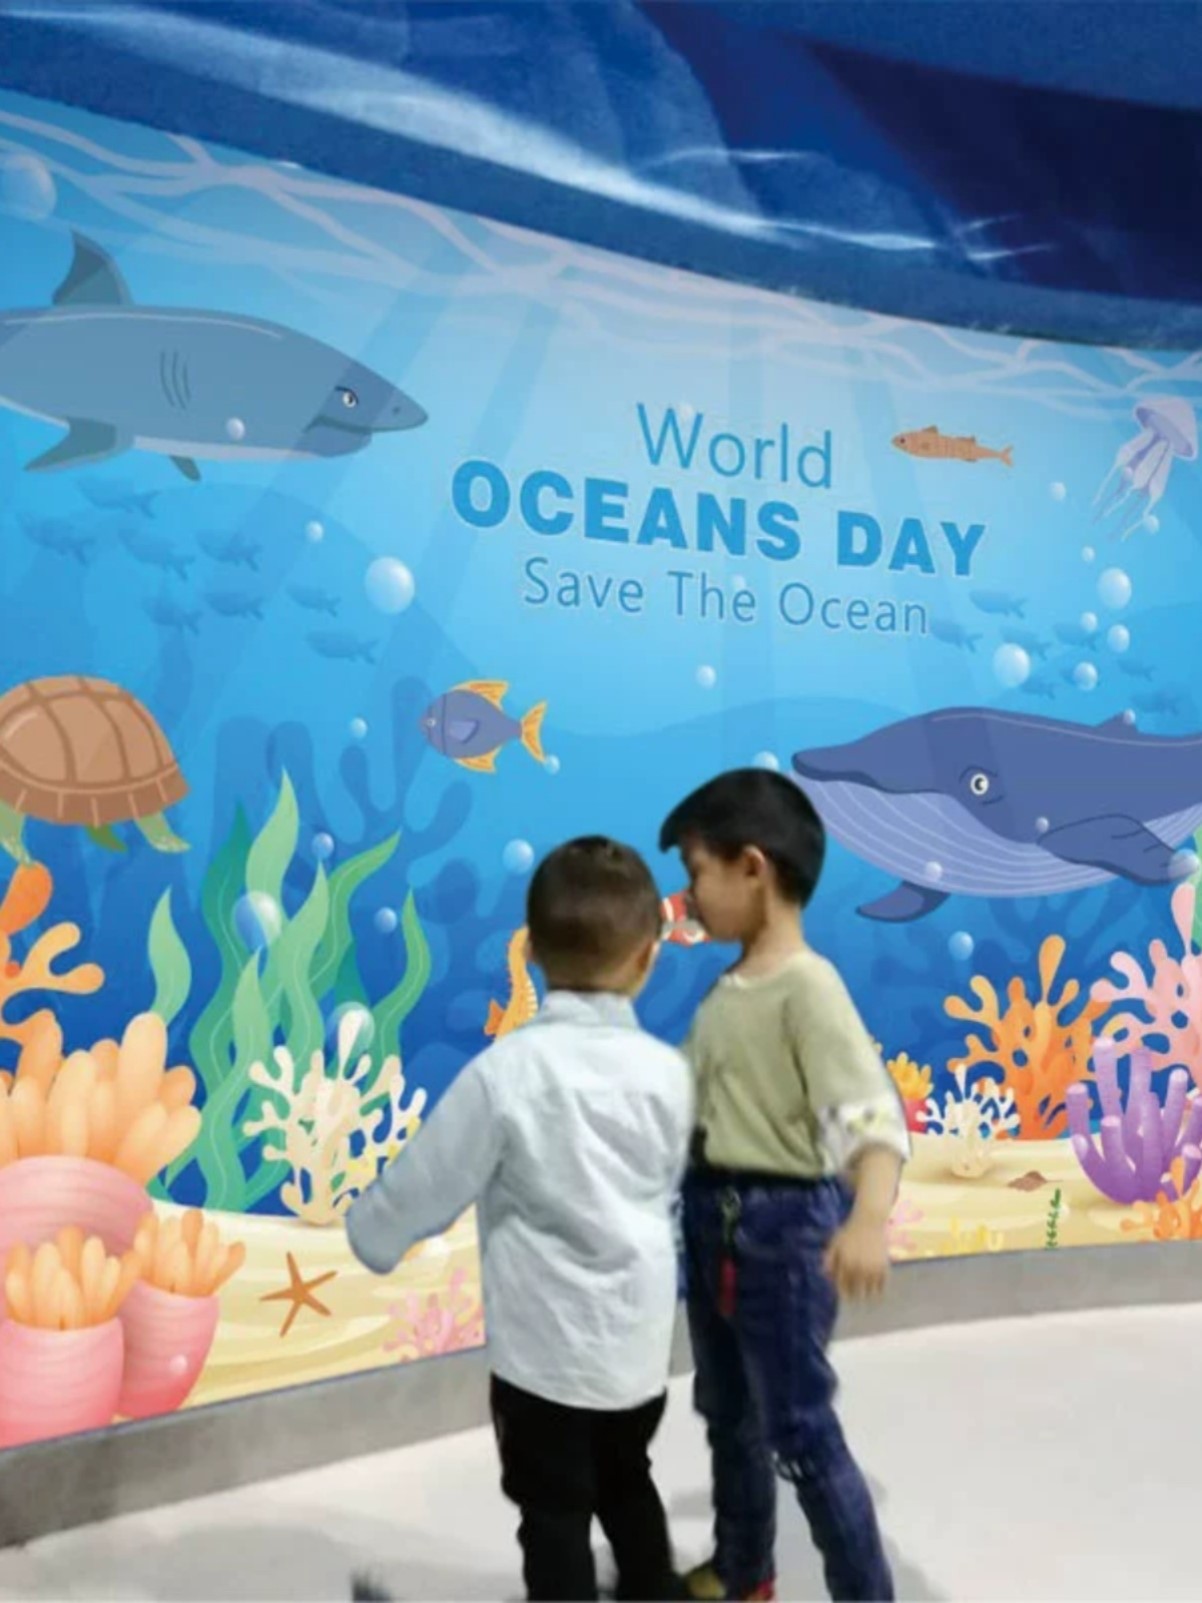 海洋风格主题儿童房间壁纸水族馆卡通幼儿园墙面装饰海底世界墙纸